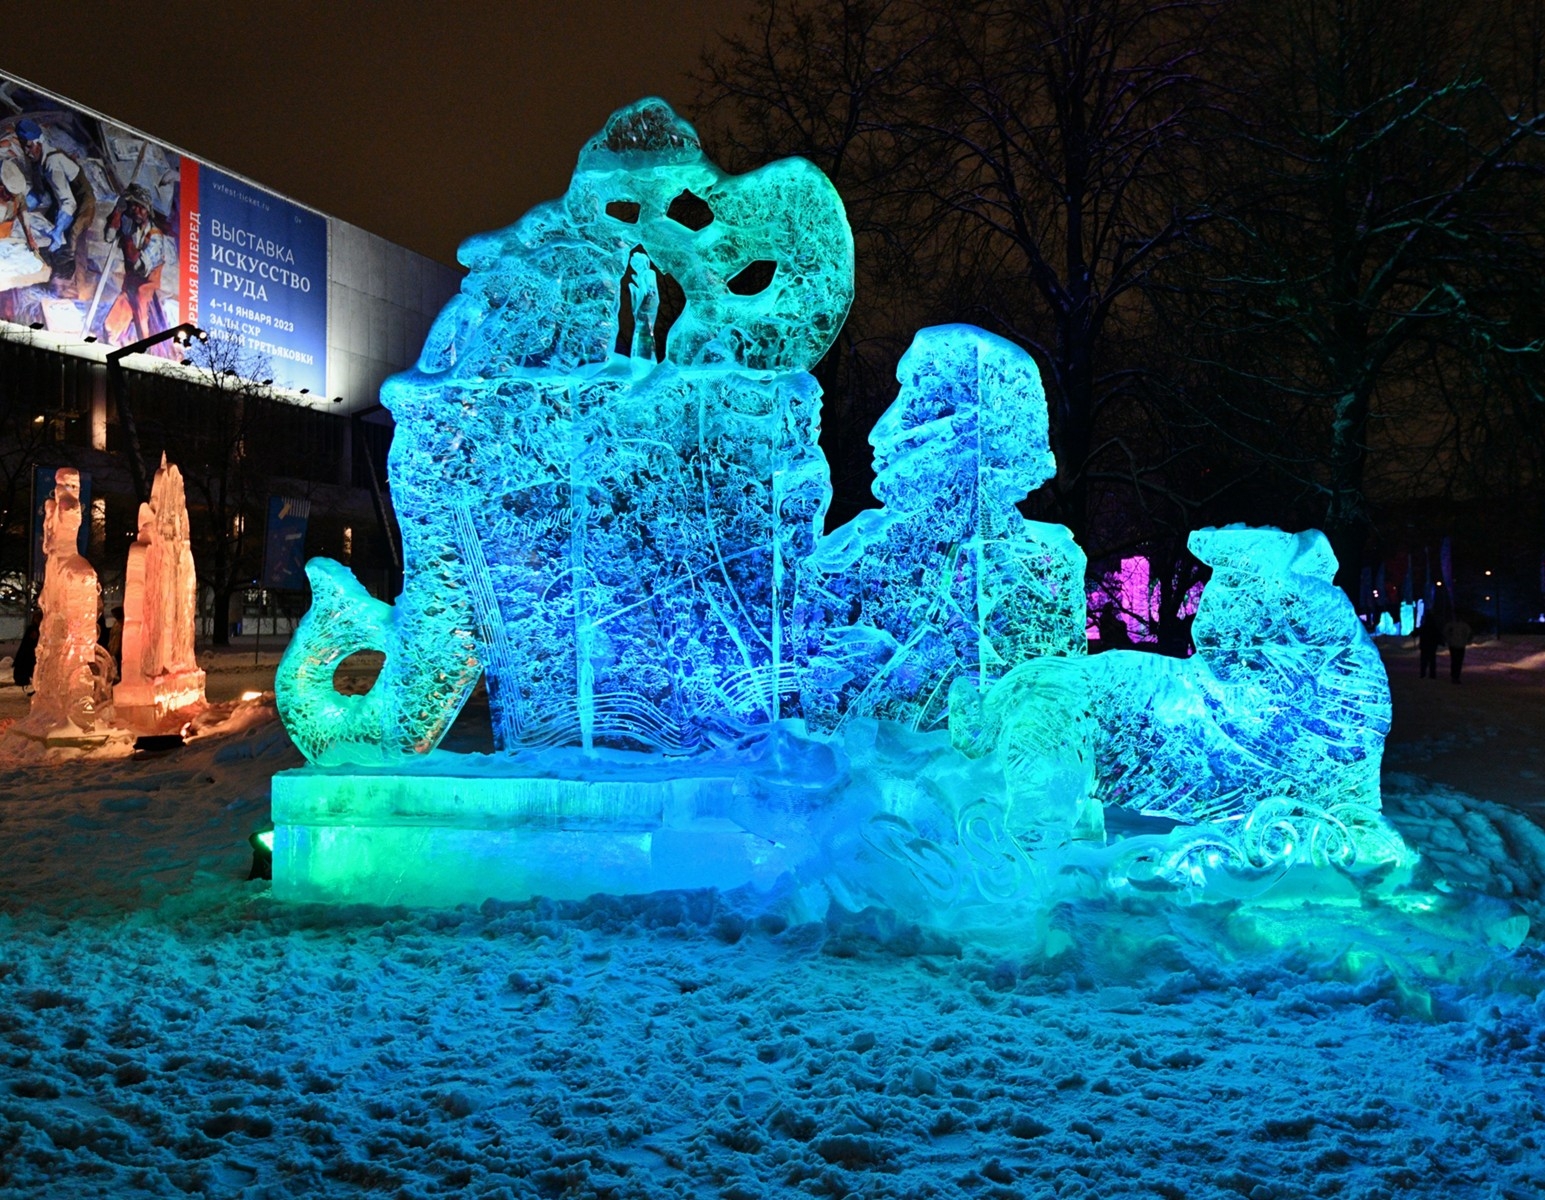 Ледяные скульптуры в парке Музеон - крупные и мелкие шедевры, которые вызывают восторг и восхищение.